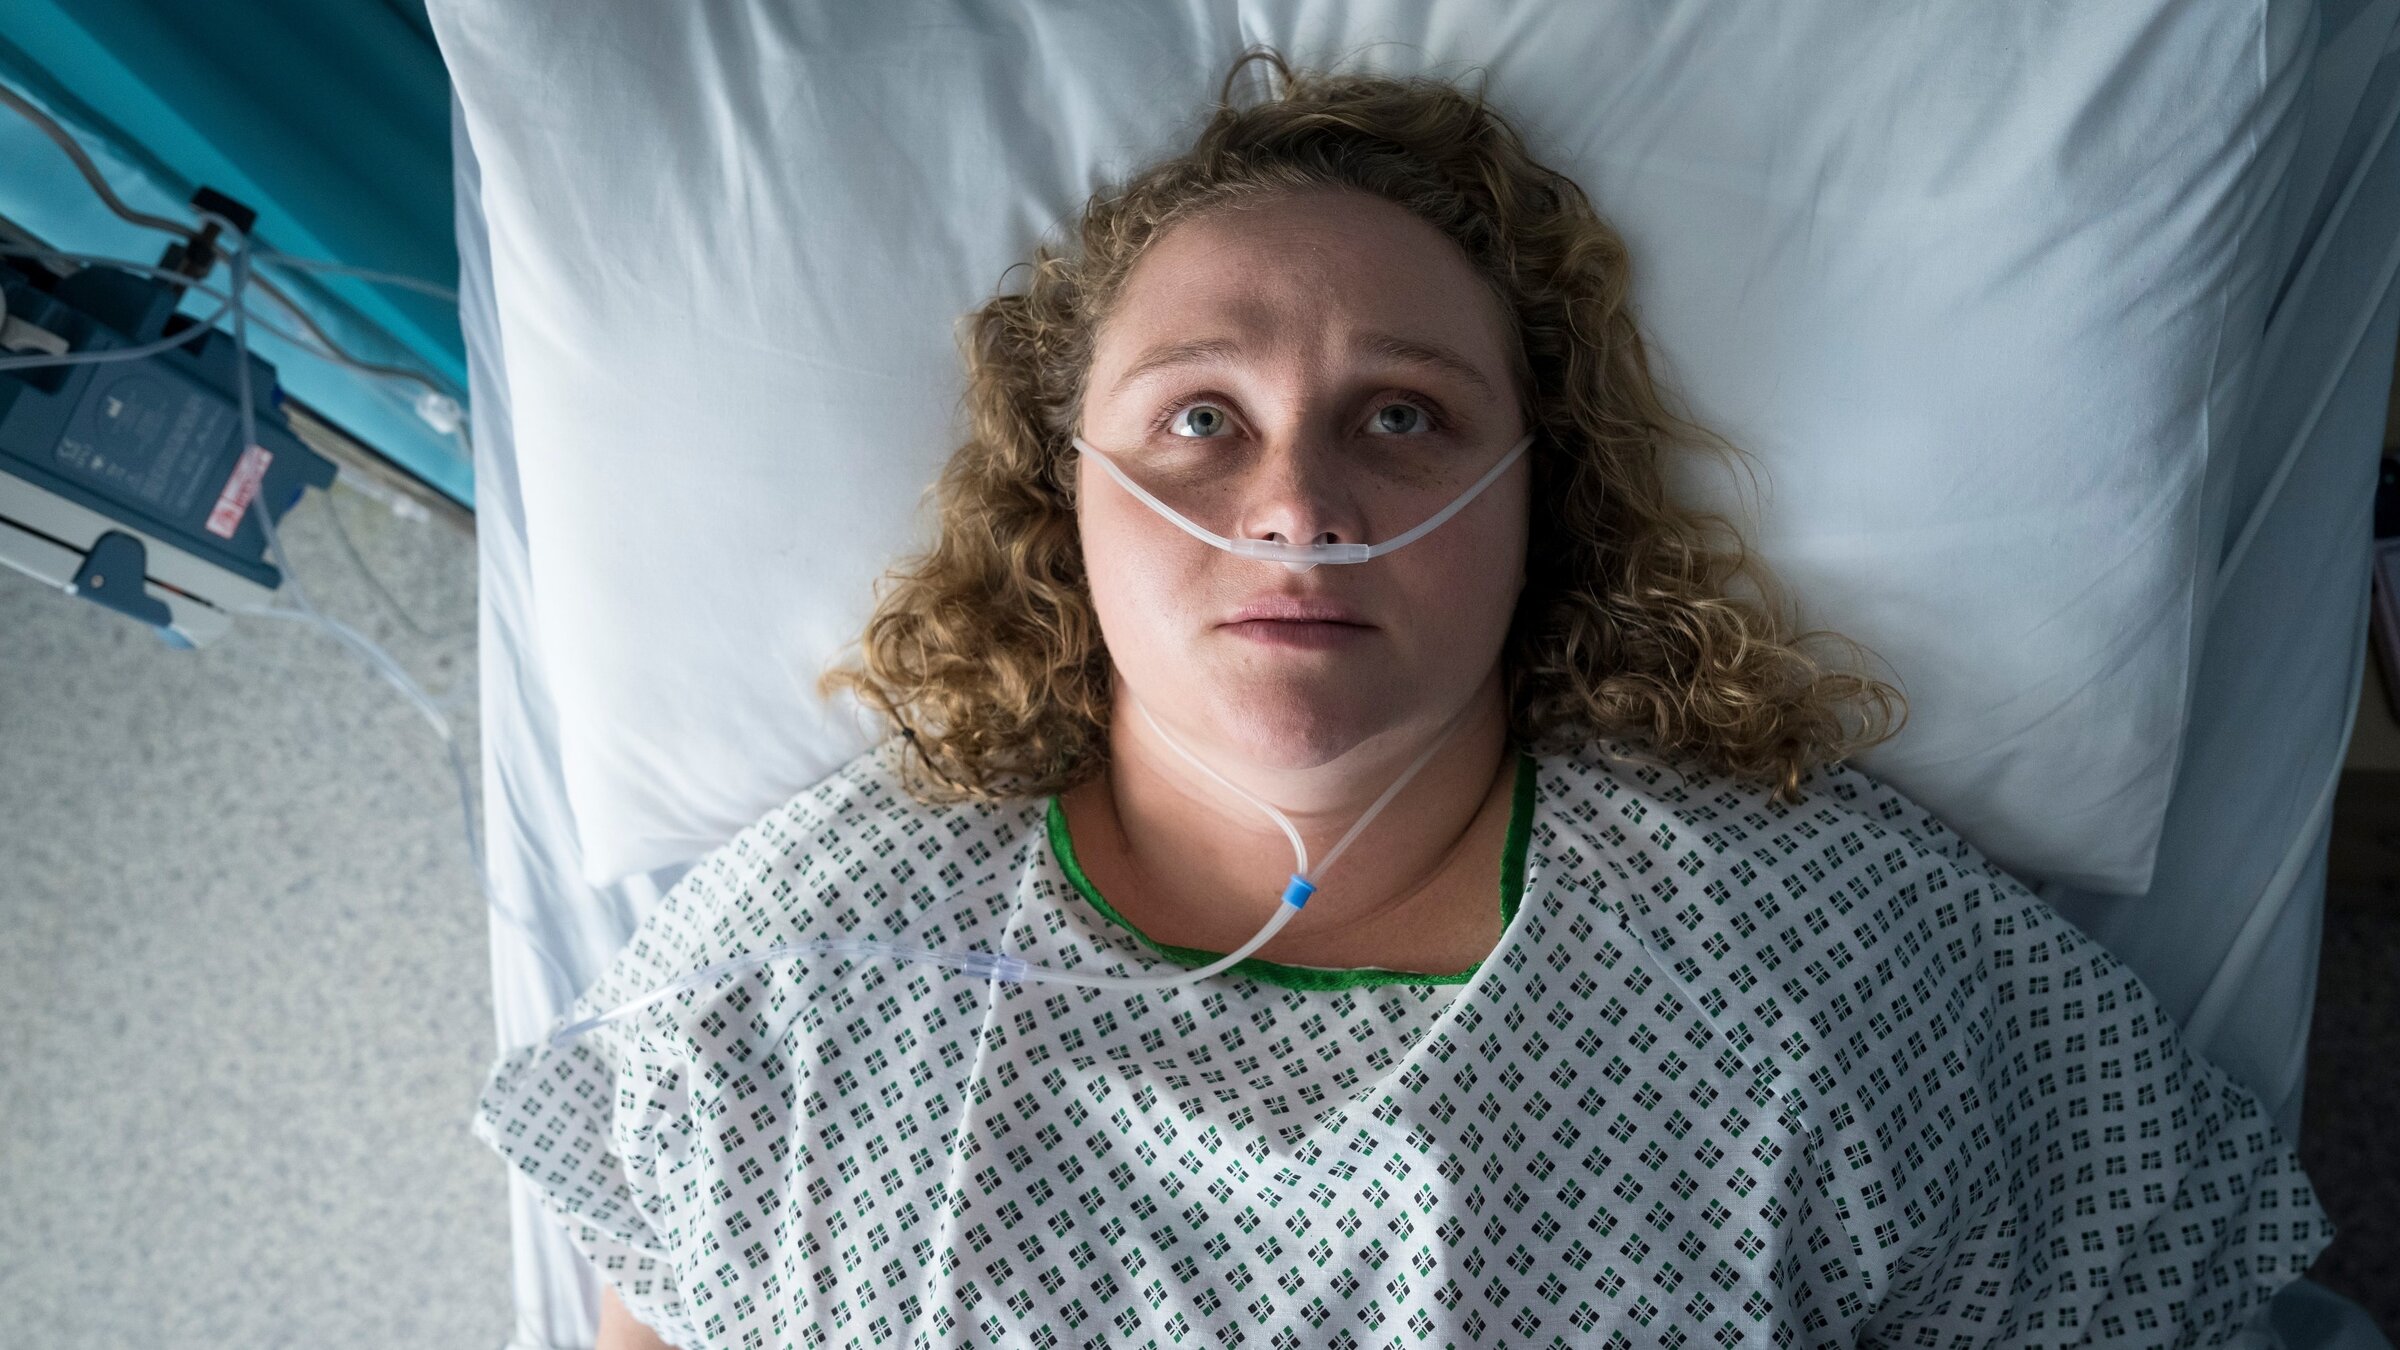 "The Tourist - Irisches Blut - In Morpheus' Fängen": Blick von oben: Helen Chambers (Danielle Macdonald) liegt in einem Krankenbett. Sie trägt ein grün-weißes Nachthemd der Klinik; in ihrer Nase hängt ein Plastikschlauch zur Versorgung mit Sauerstoff. Helen hat die Augen geöffnet und schaut nach oben an die Zimmerdecke.